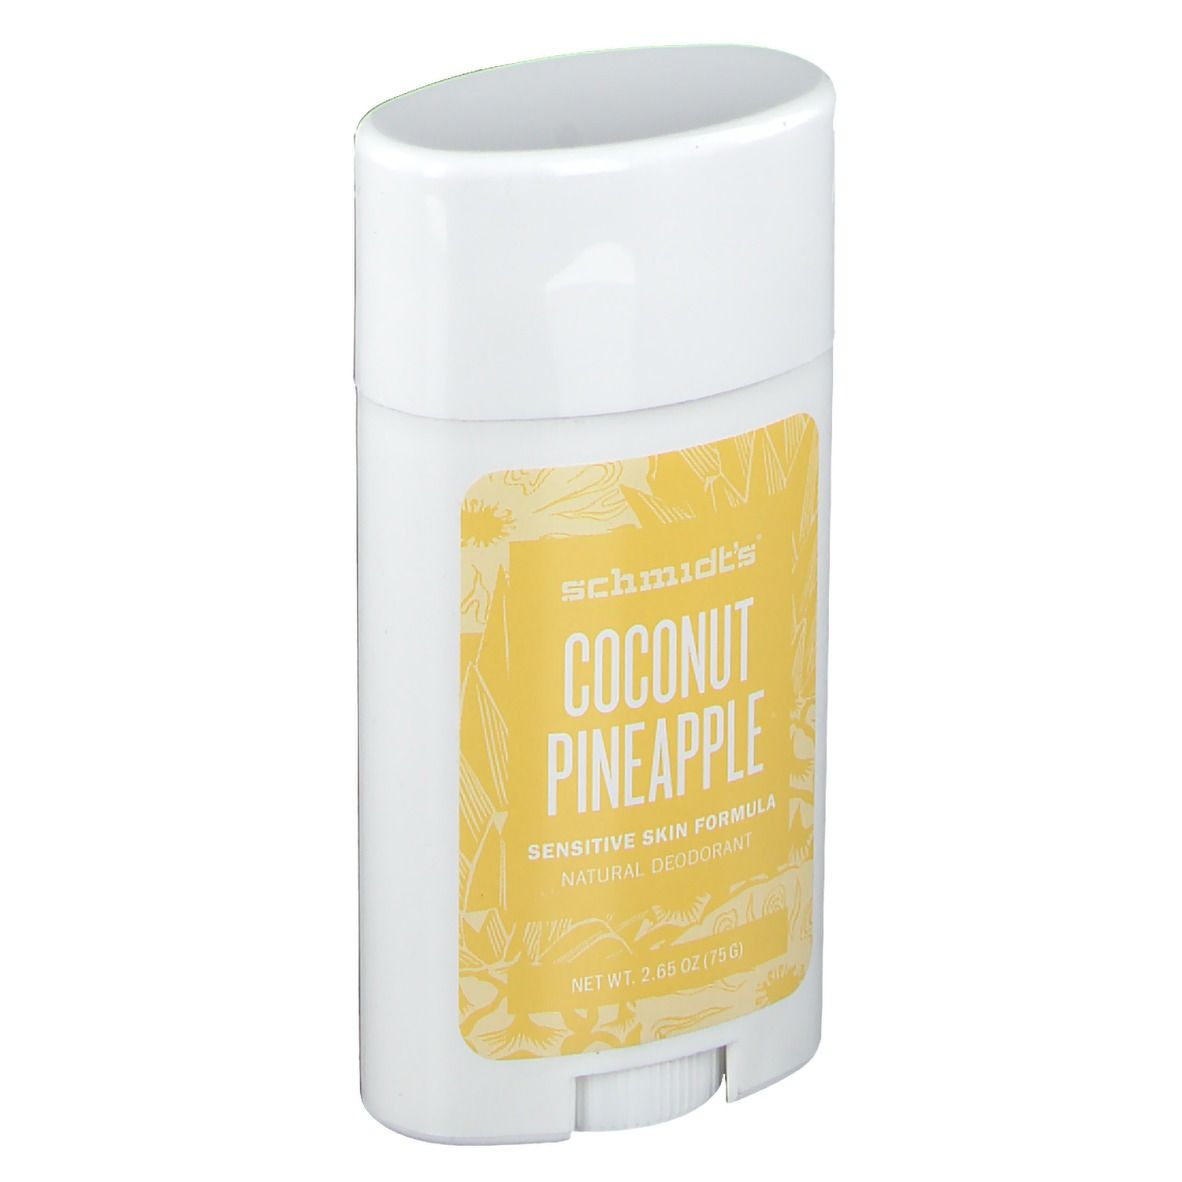 schmidts Coconut Pineapple Deodorant